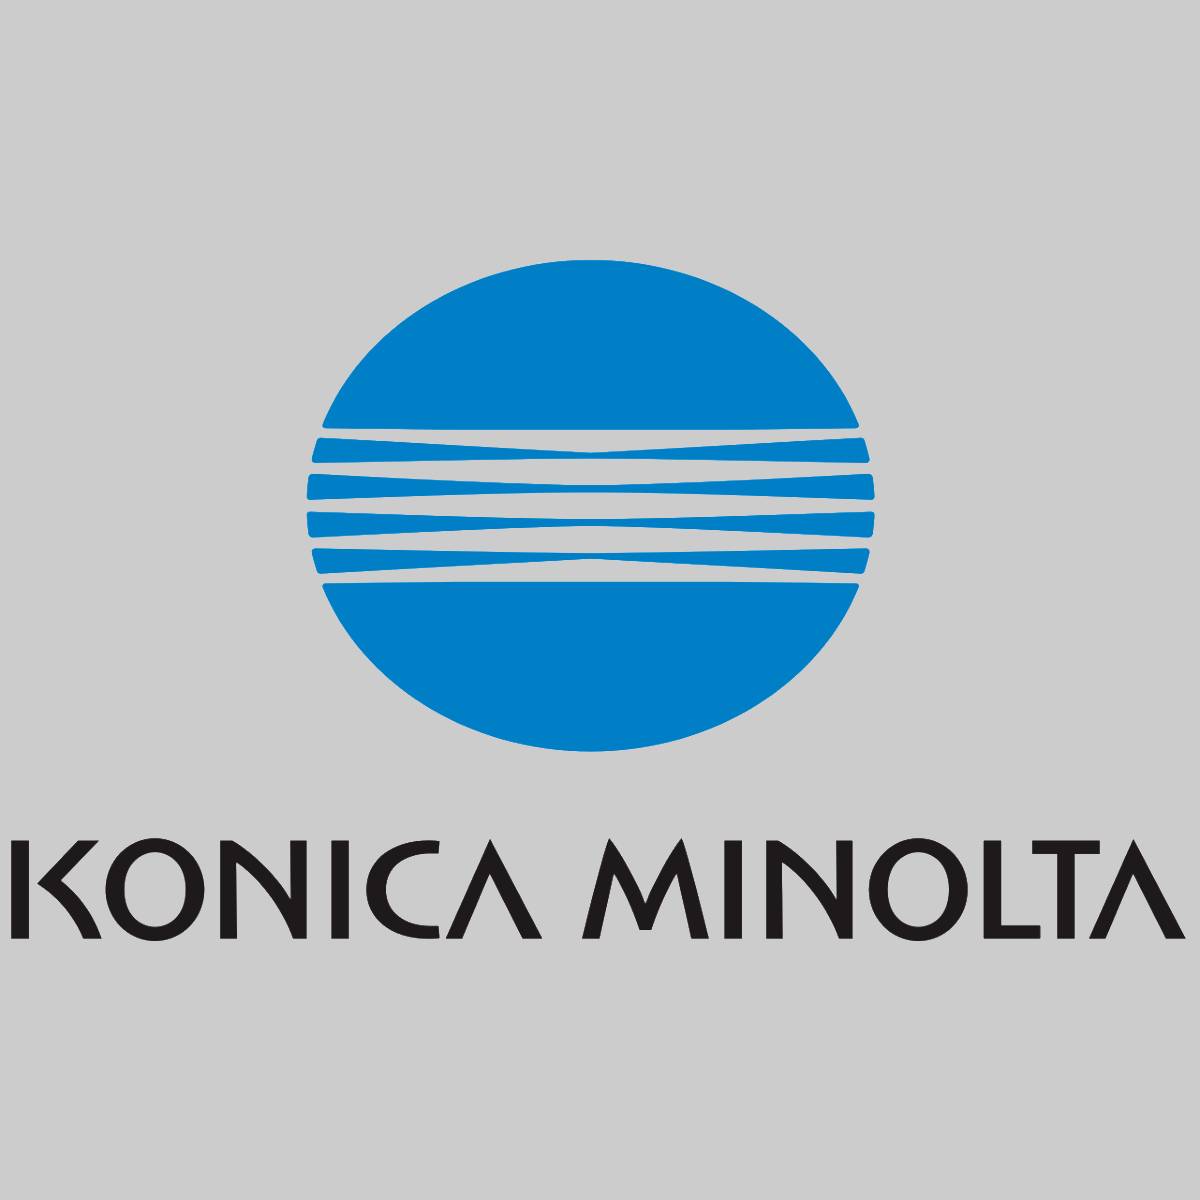 Konica Minolta DV616C Développeur Cyan A5E7900 pour Bizhub Press C1085 1100